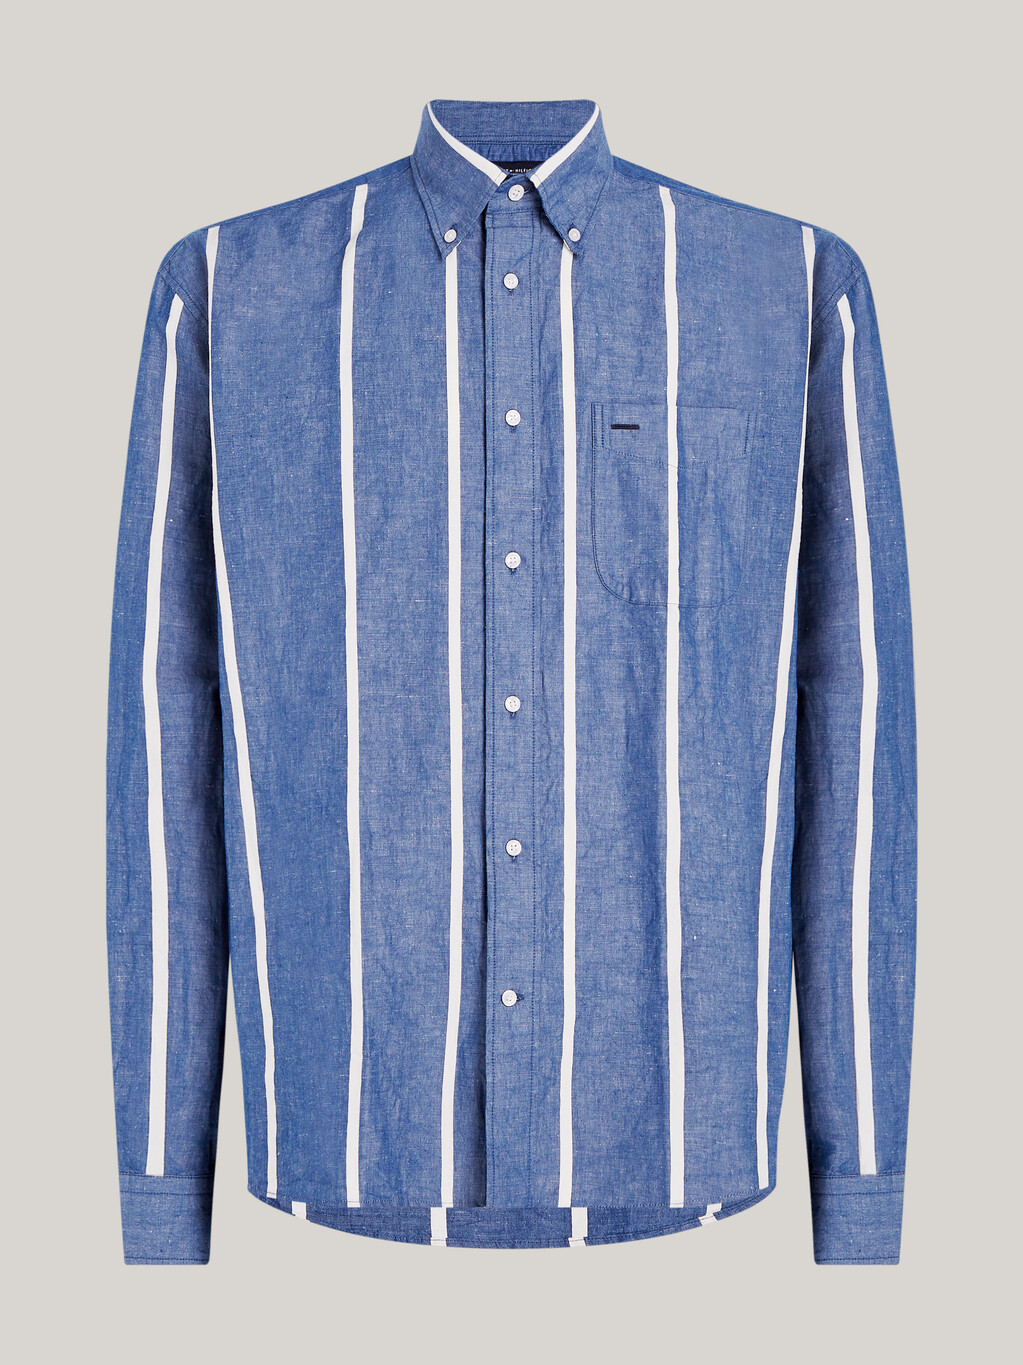 豎條紋常規襯衫, Anchor Blue / Calico, hi-res